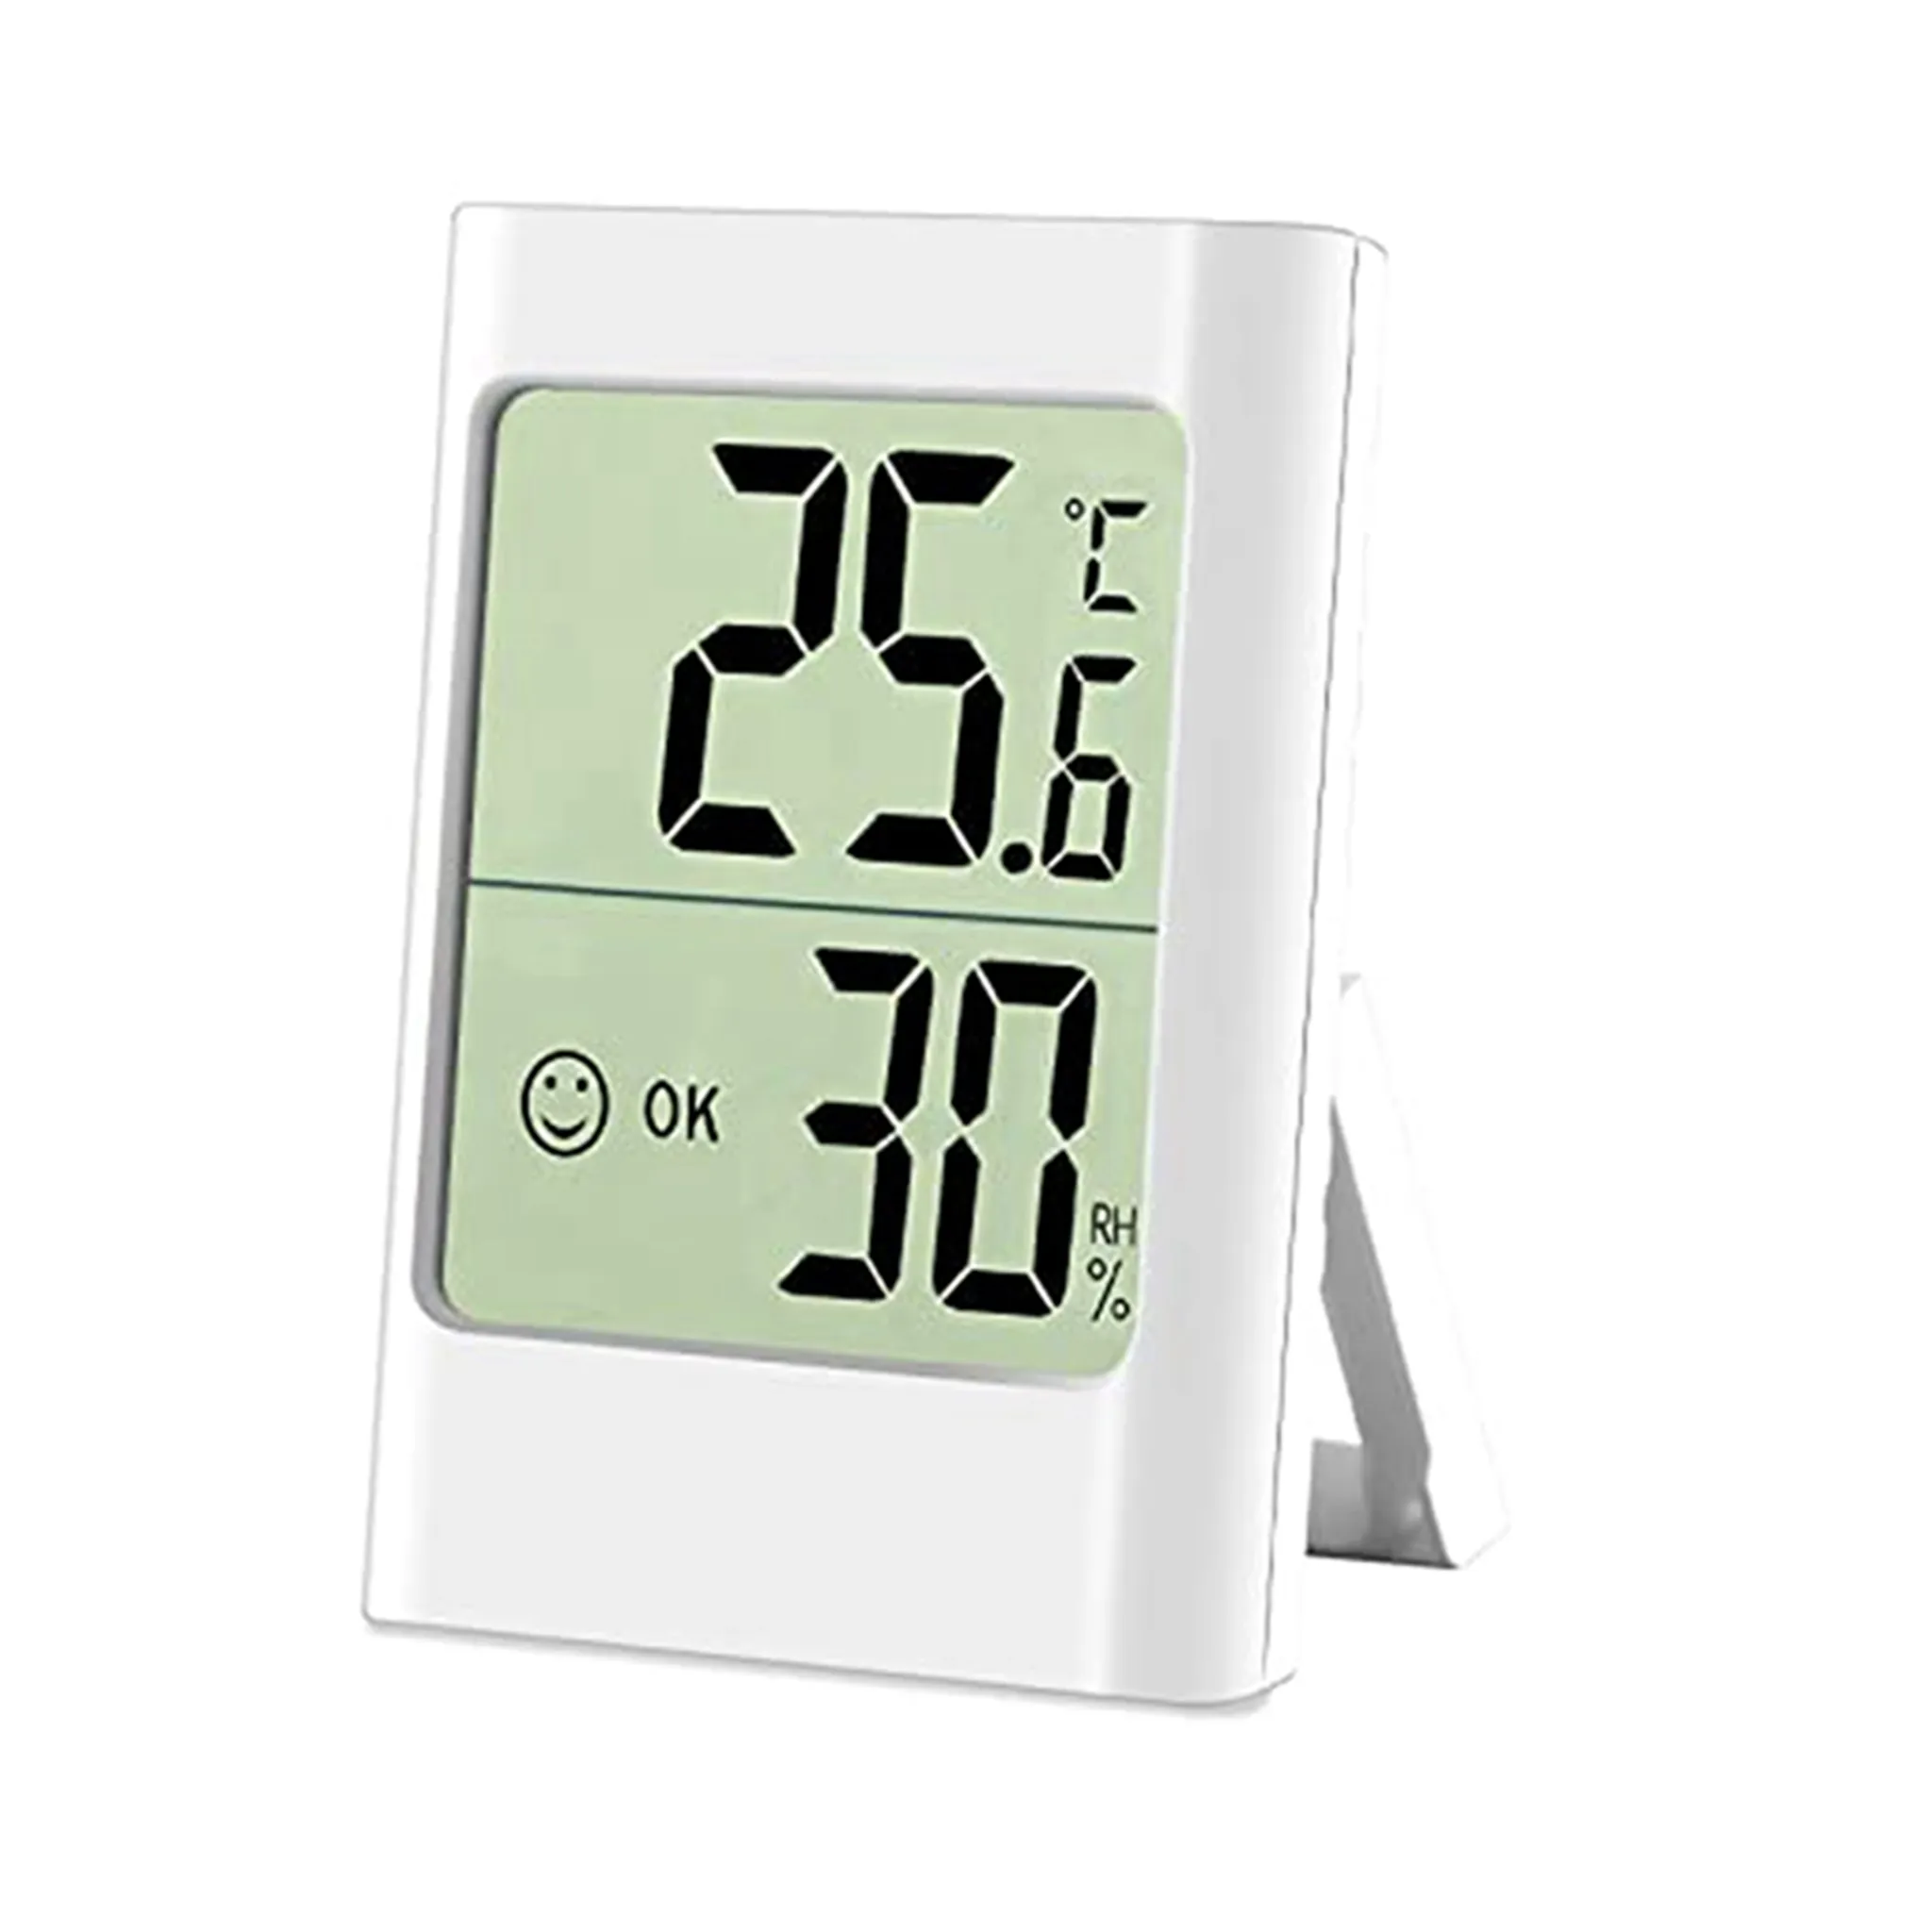 Thermometer Hygrometer Digital Wand Tisch Küche Schlafzimmer Uhr